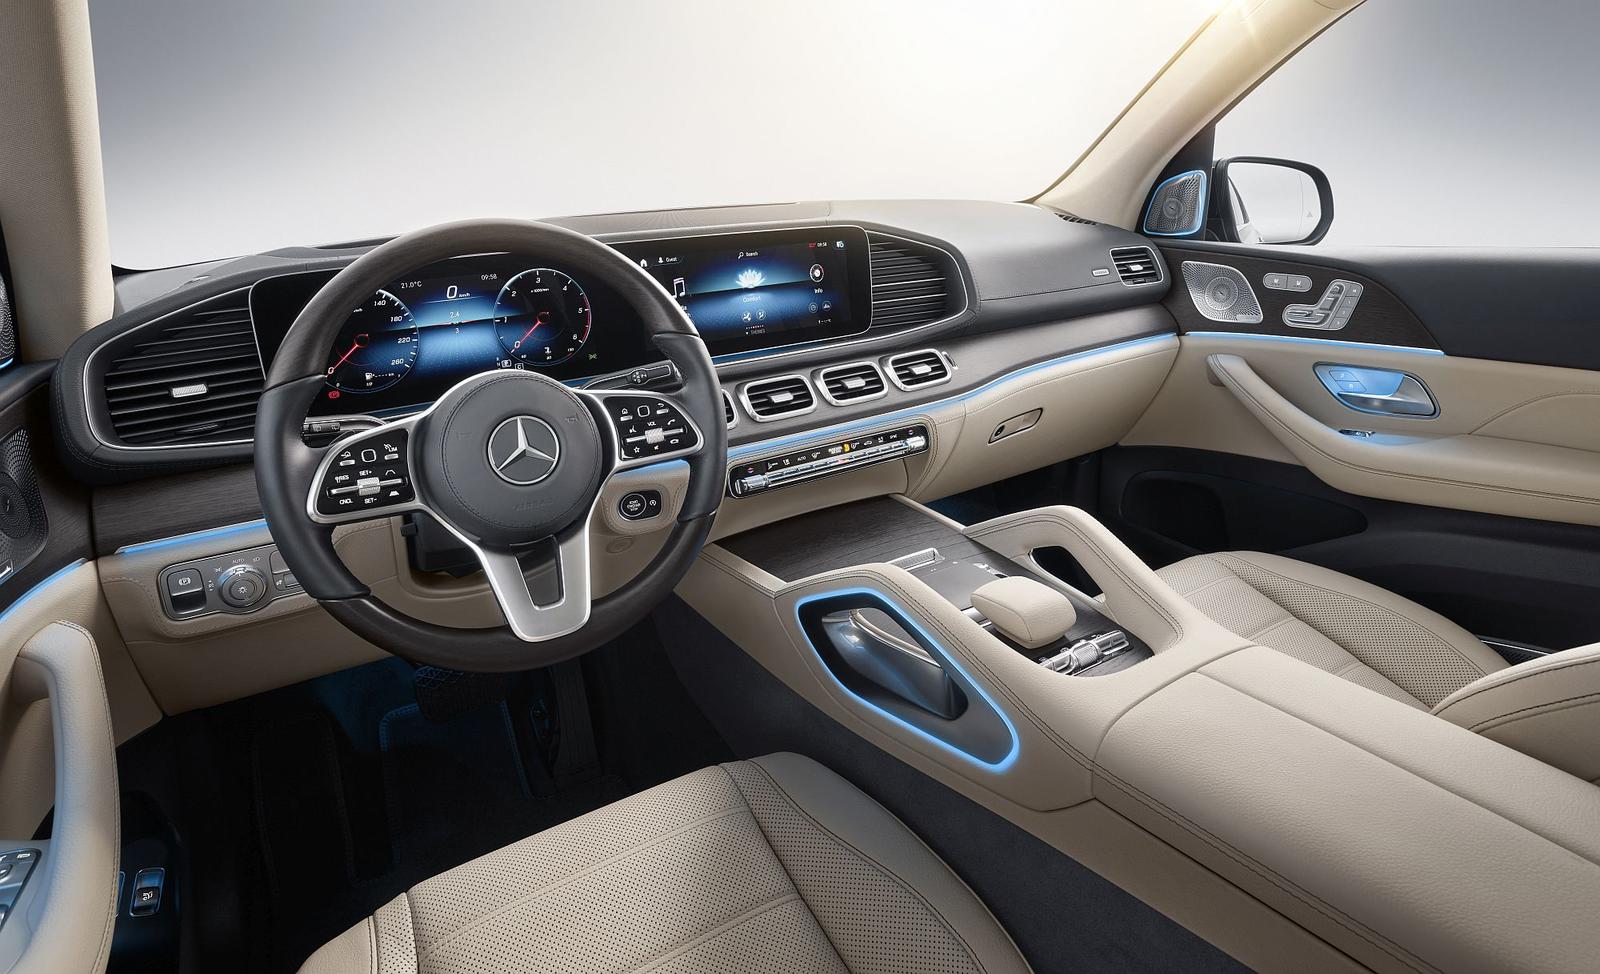 Der neue Mercedes-Benz GLS: Die S-Klasse unter den SUV

The new Mercedes-Benz GLS: The S-Class of SUVs